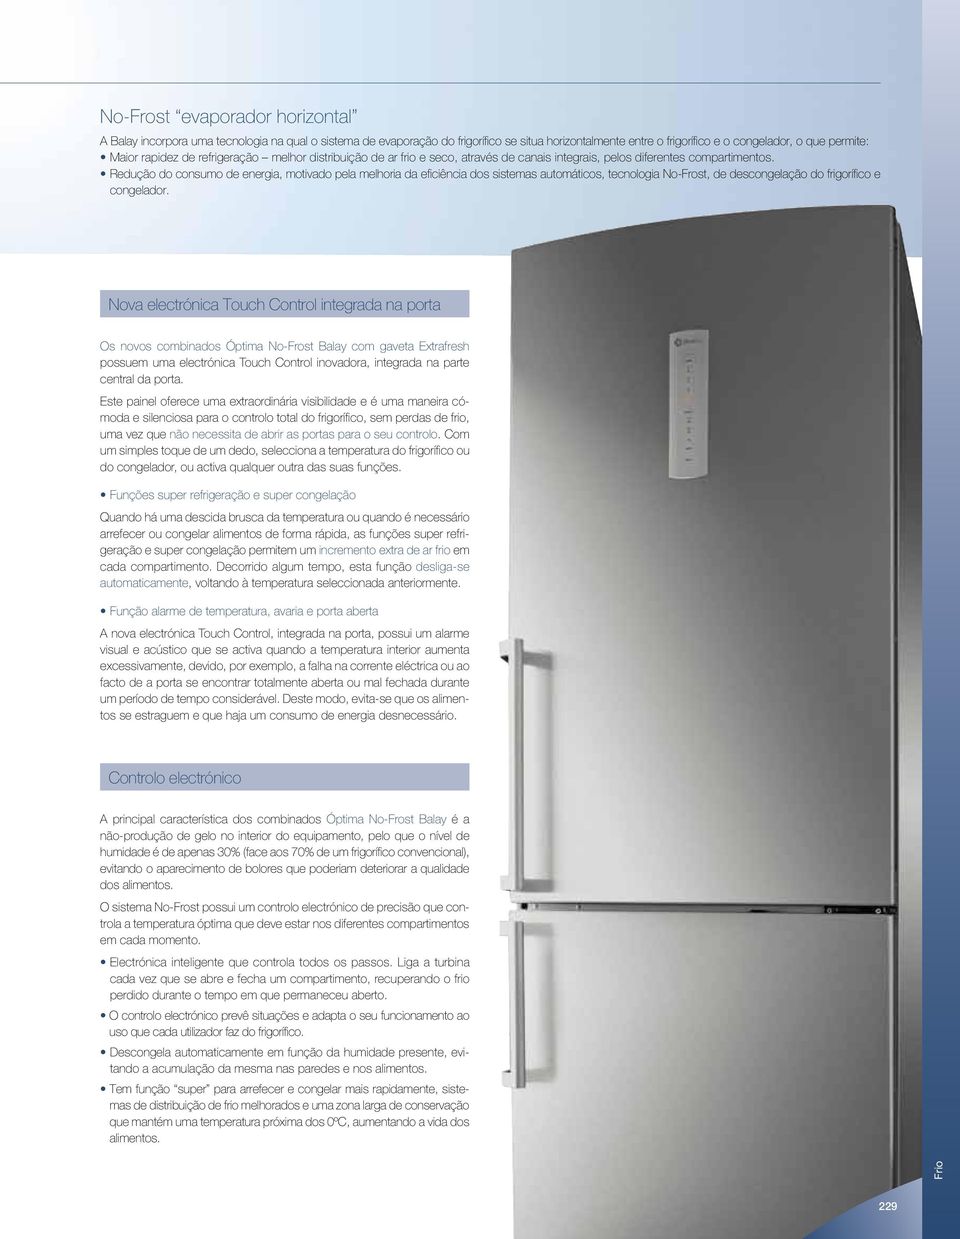 Redução do consumo de energia, motivado pela melhoria da eficiência dos sistemas automáticos, tecnologia No-Frost, de descongelação do frigorífico e congelador.